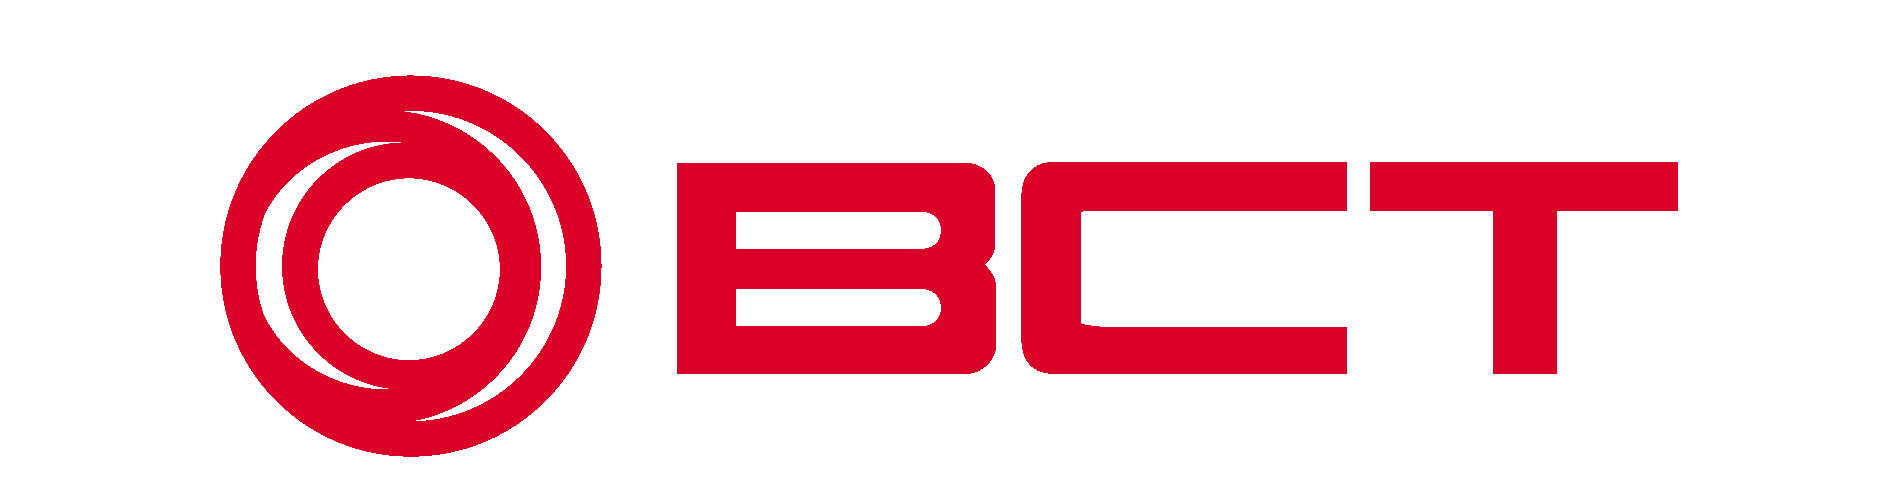 bct_logo